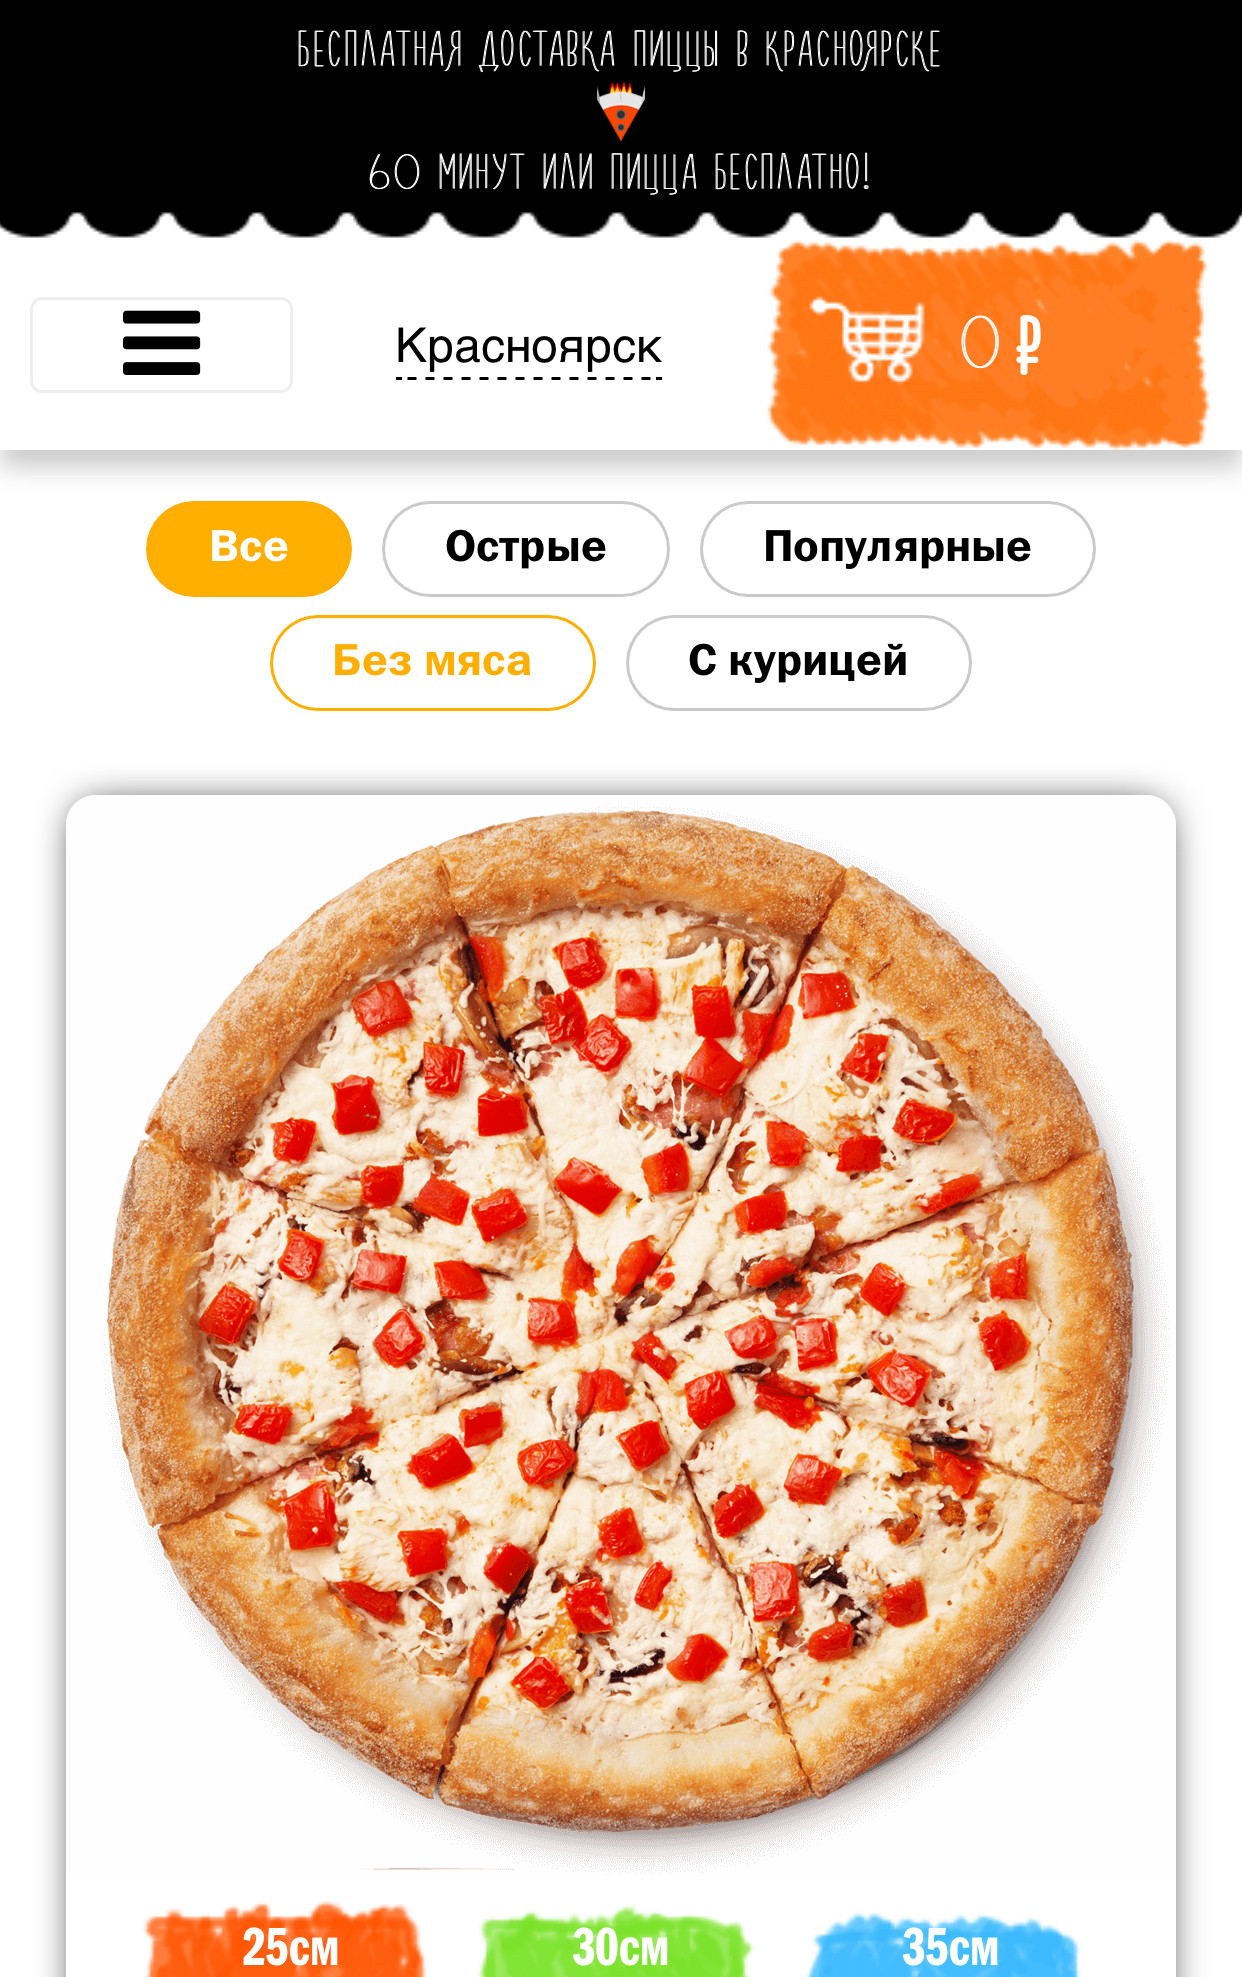 лучшая доставка пиццы в красноярске рейтинг фото 62